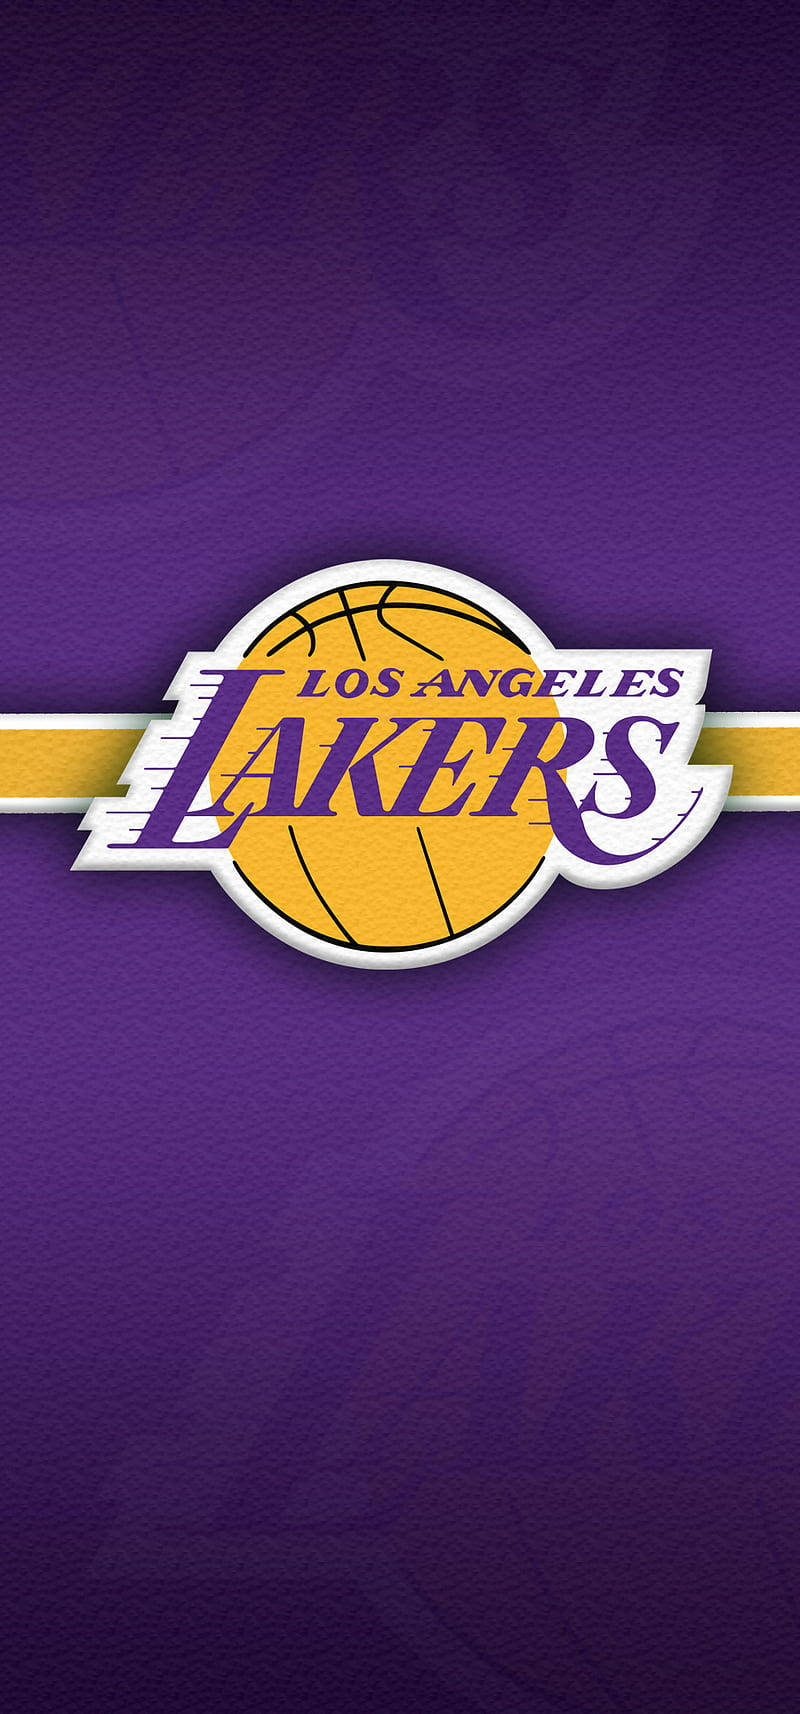 Holder dig ajour med Los Angeles Lakers, hvor end du går med denne stilfulde Lakers iPhone. Wallpaper